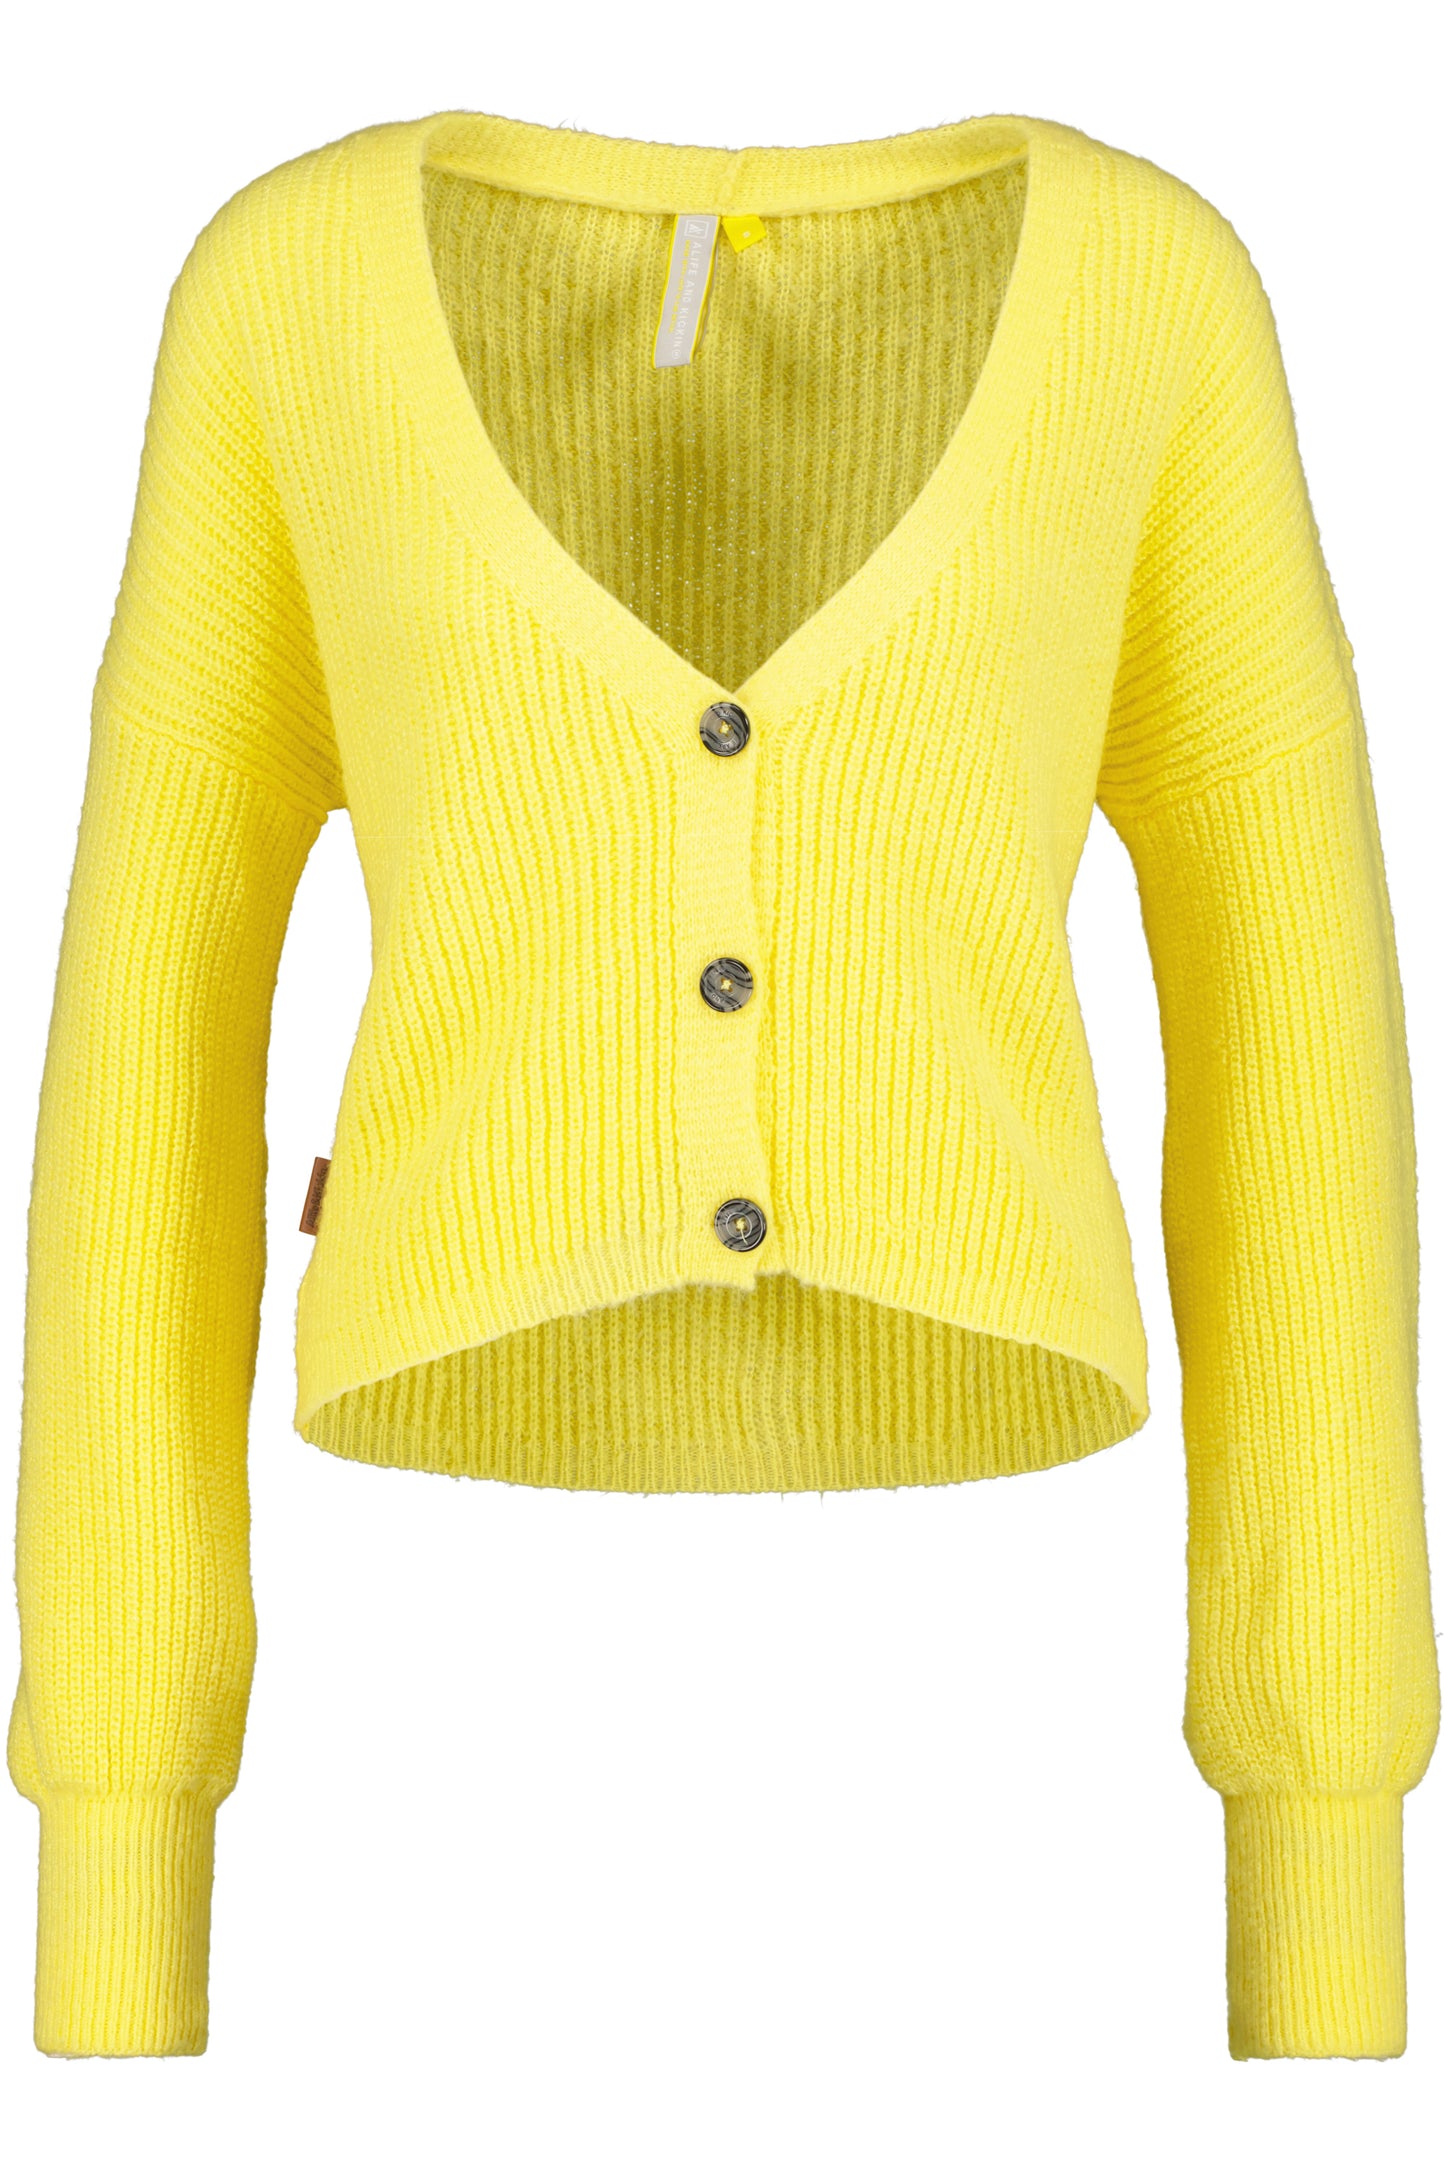 Trendige Damen Strickjacke KrissyAK - Angesagte Farben Gelb